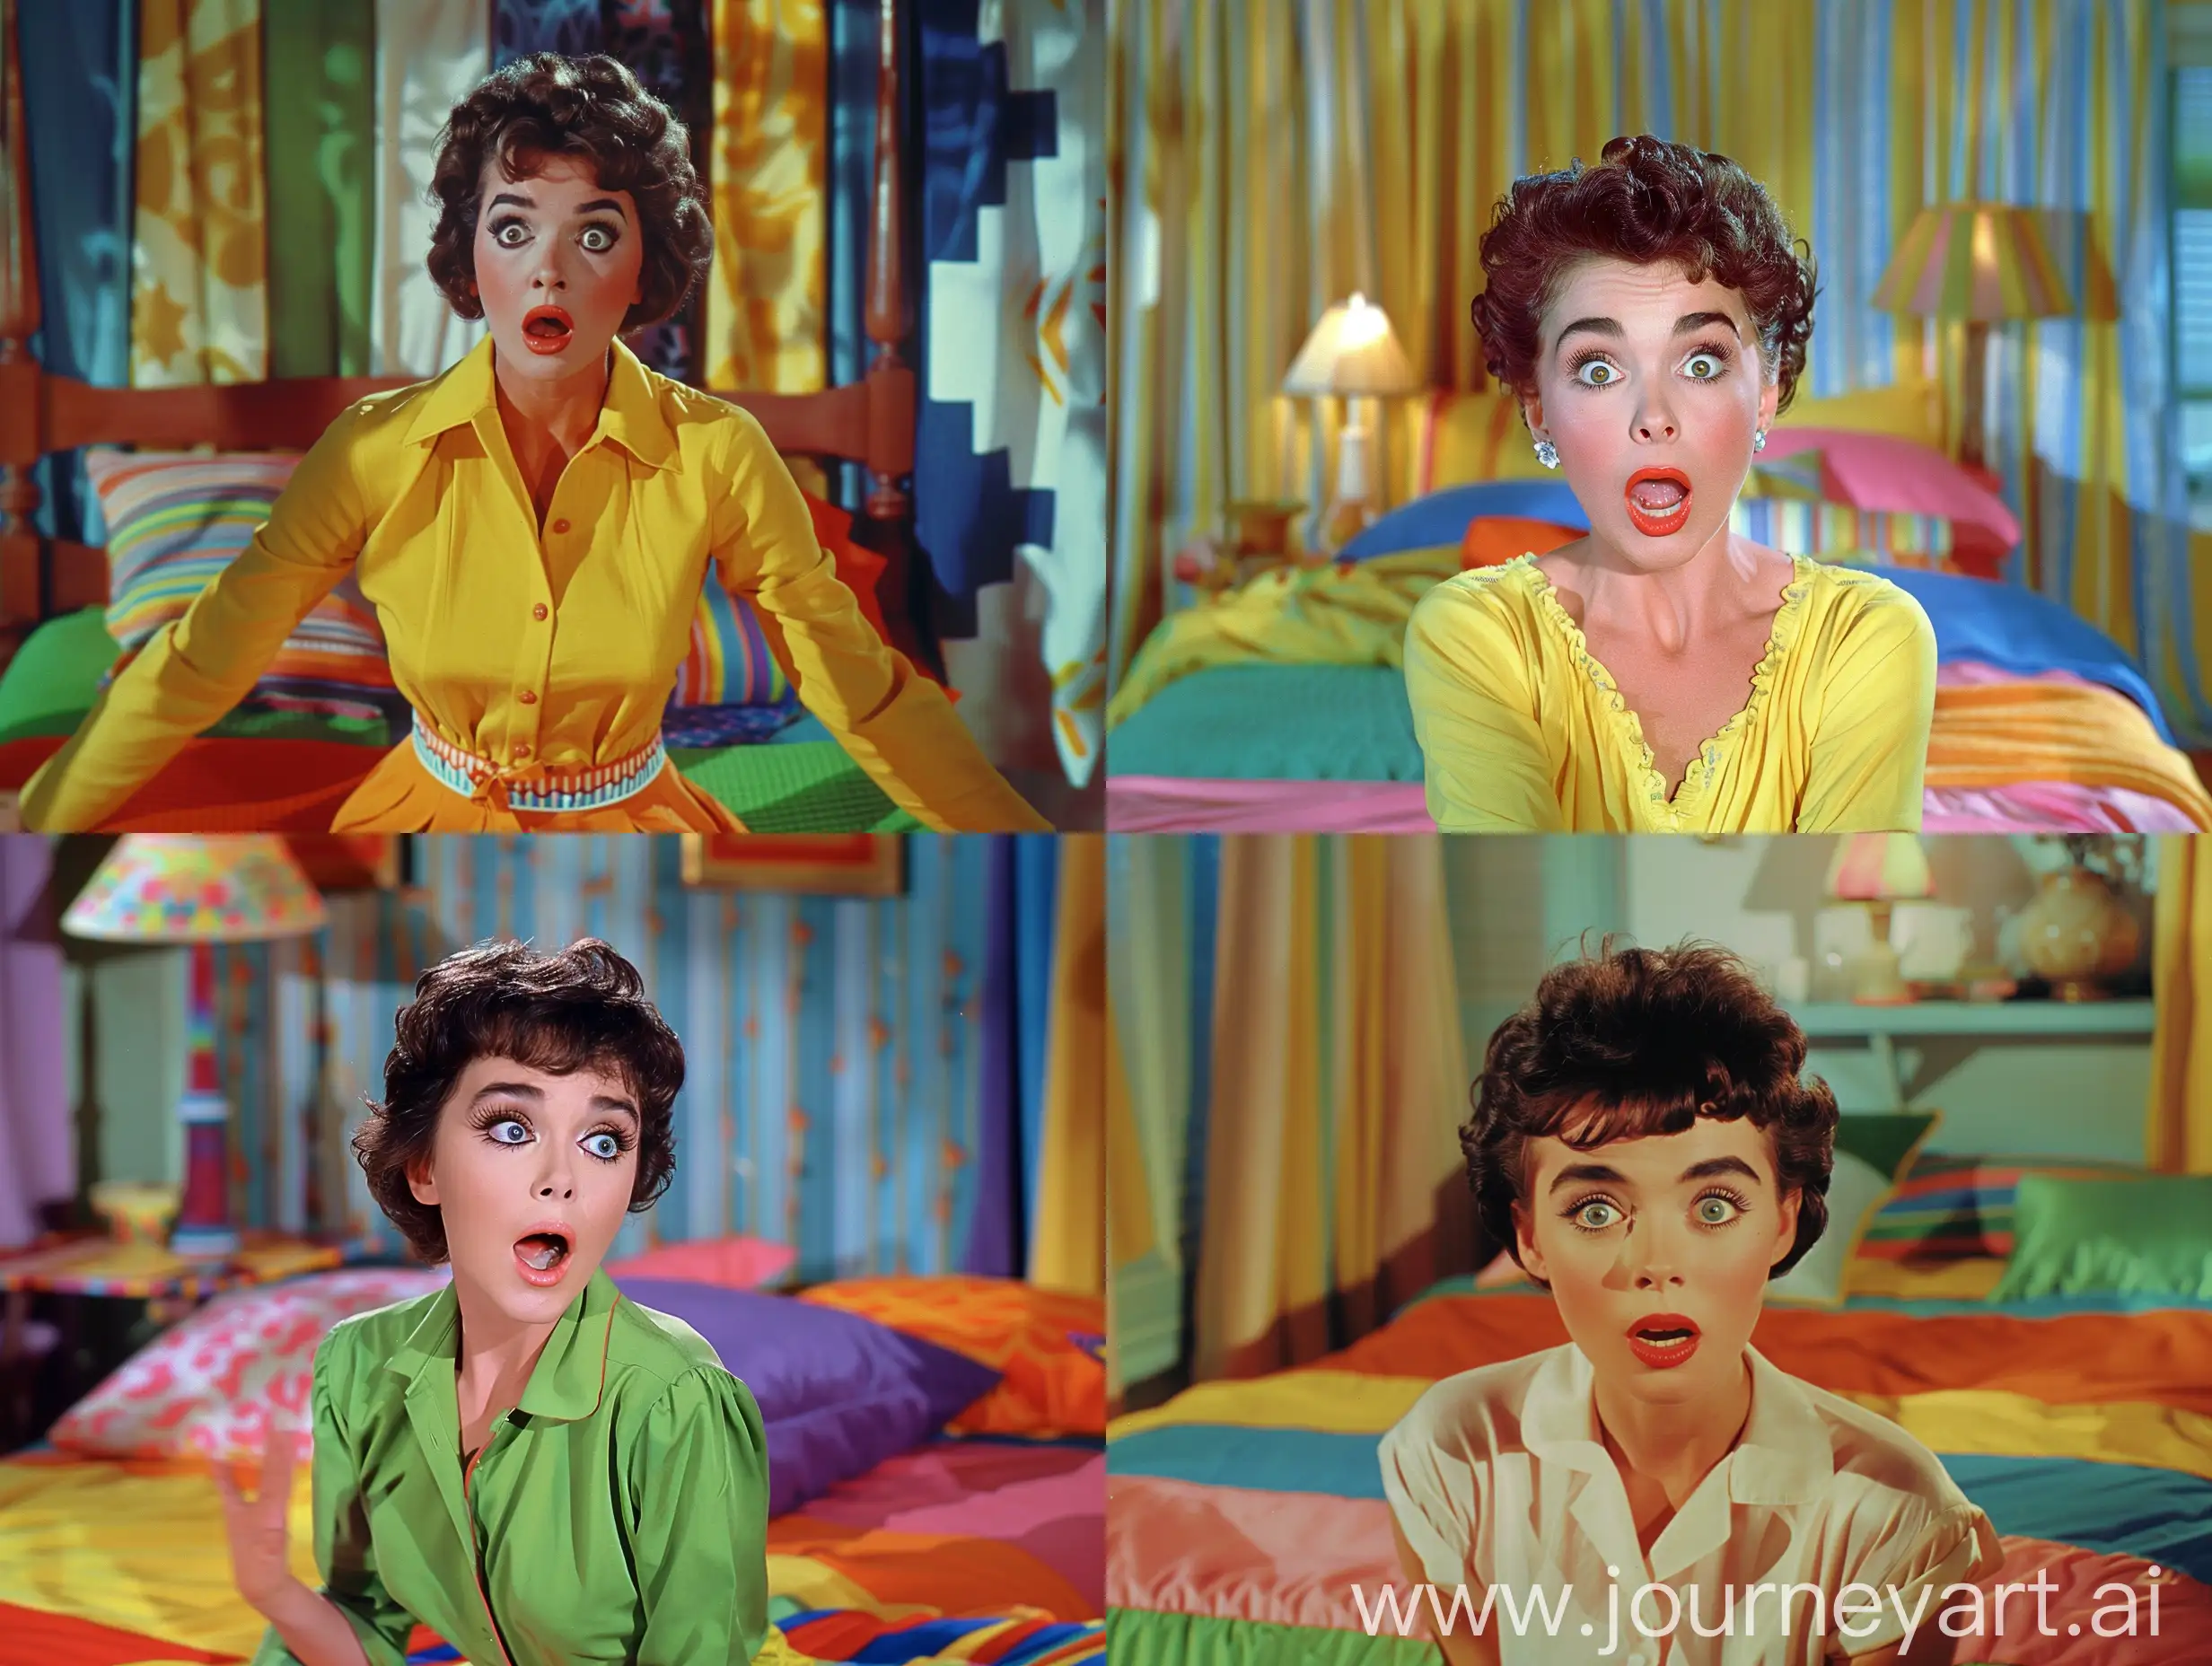 Elizabeth-Taylor-Surprised-Expression-Portrait-on-Colorful-Vintage-Bed